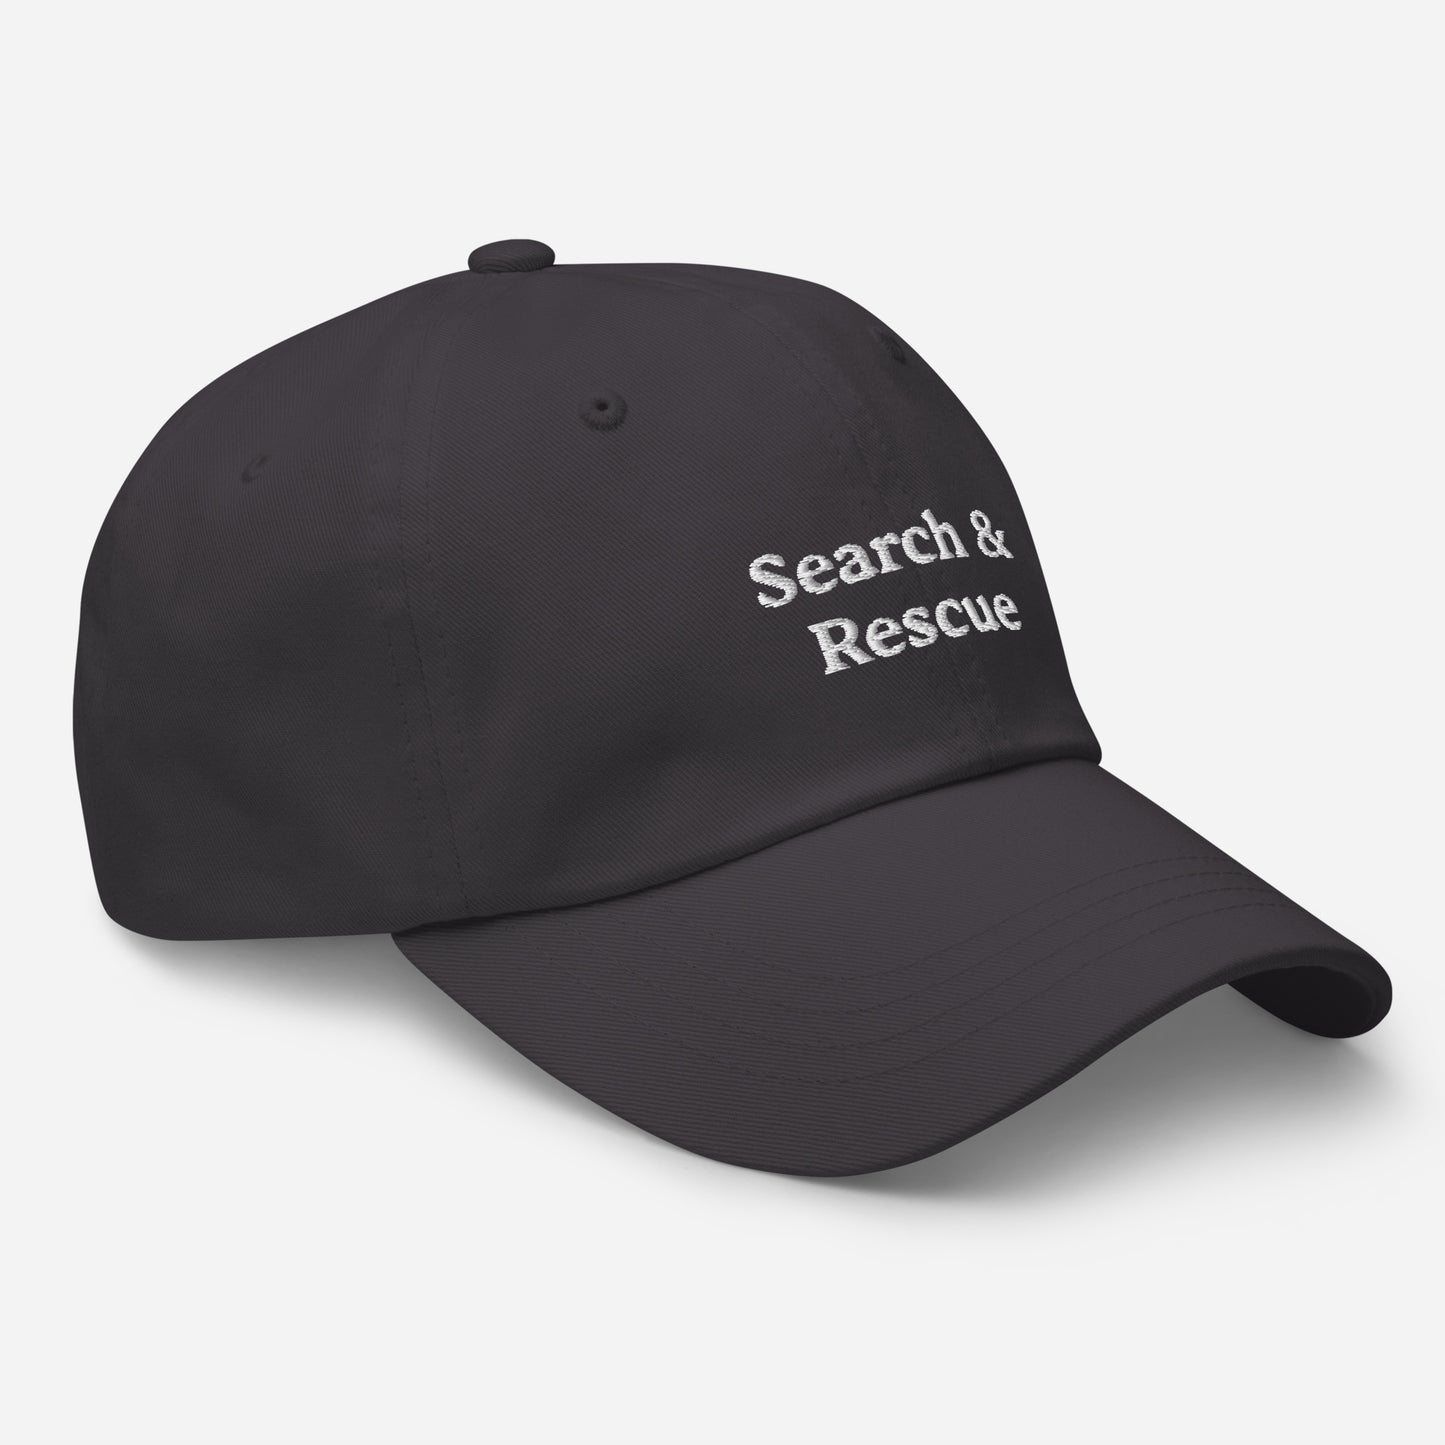 Search & Rescue Hat